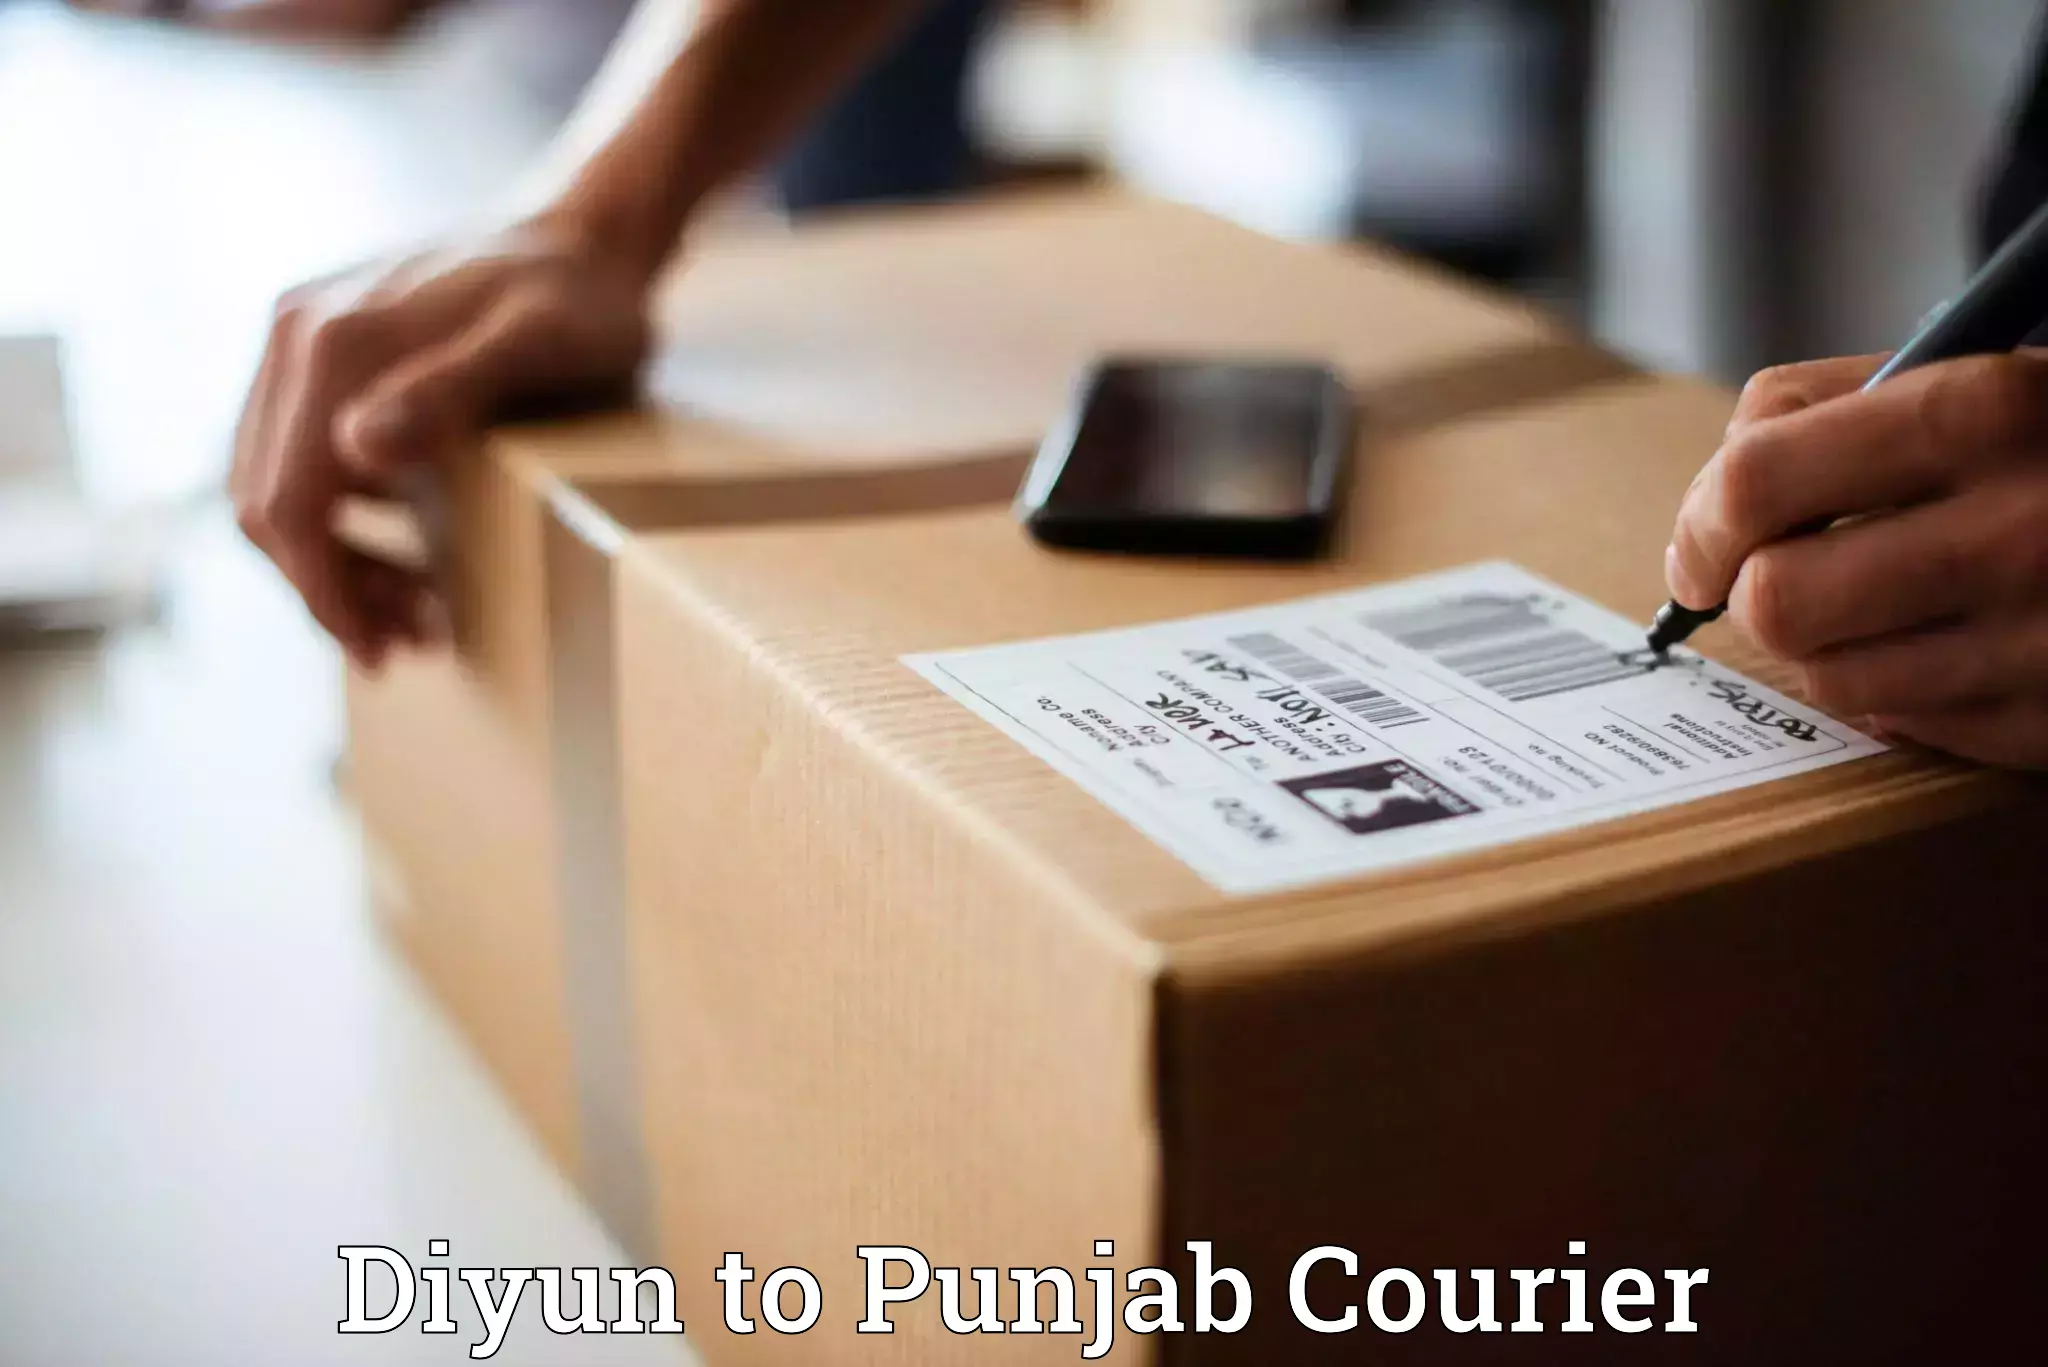 Reliable courier service Diyun to Punjab